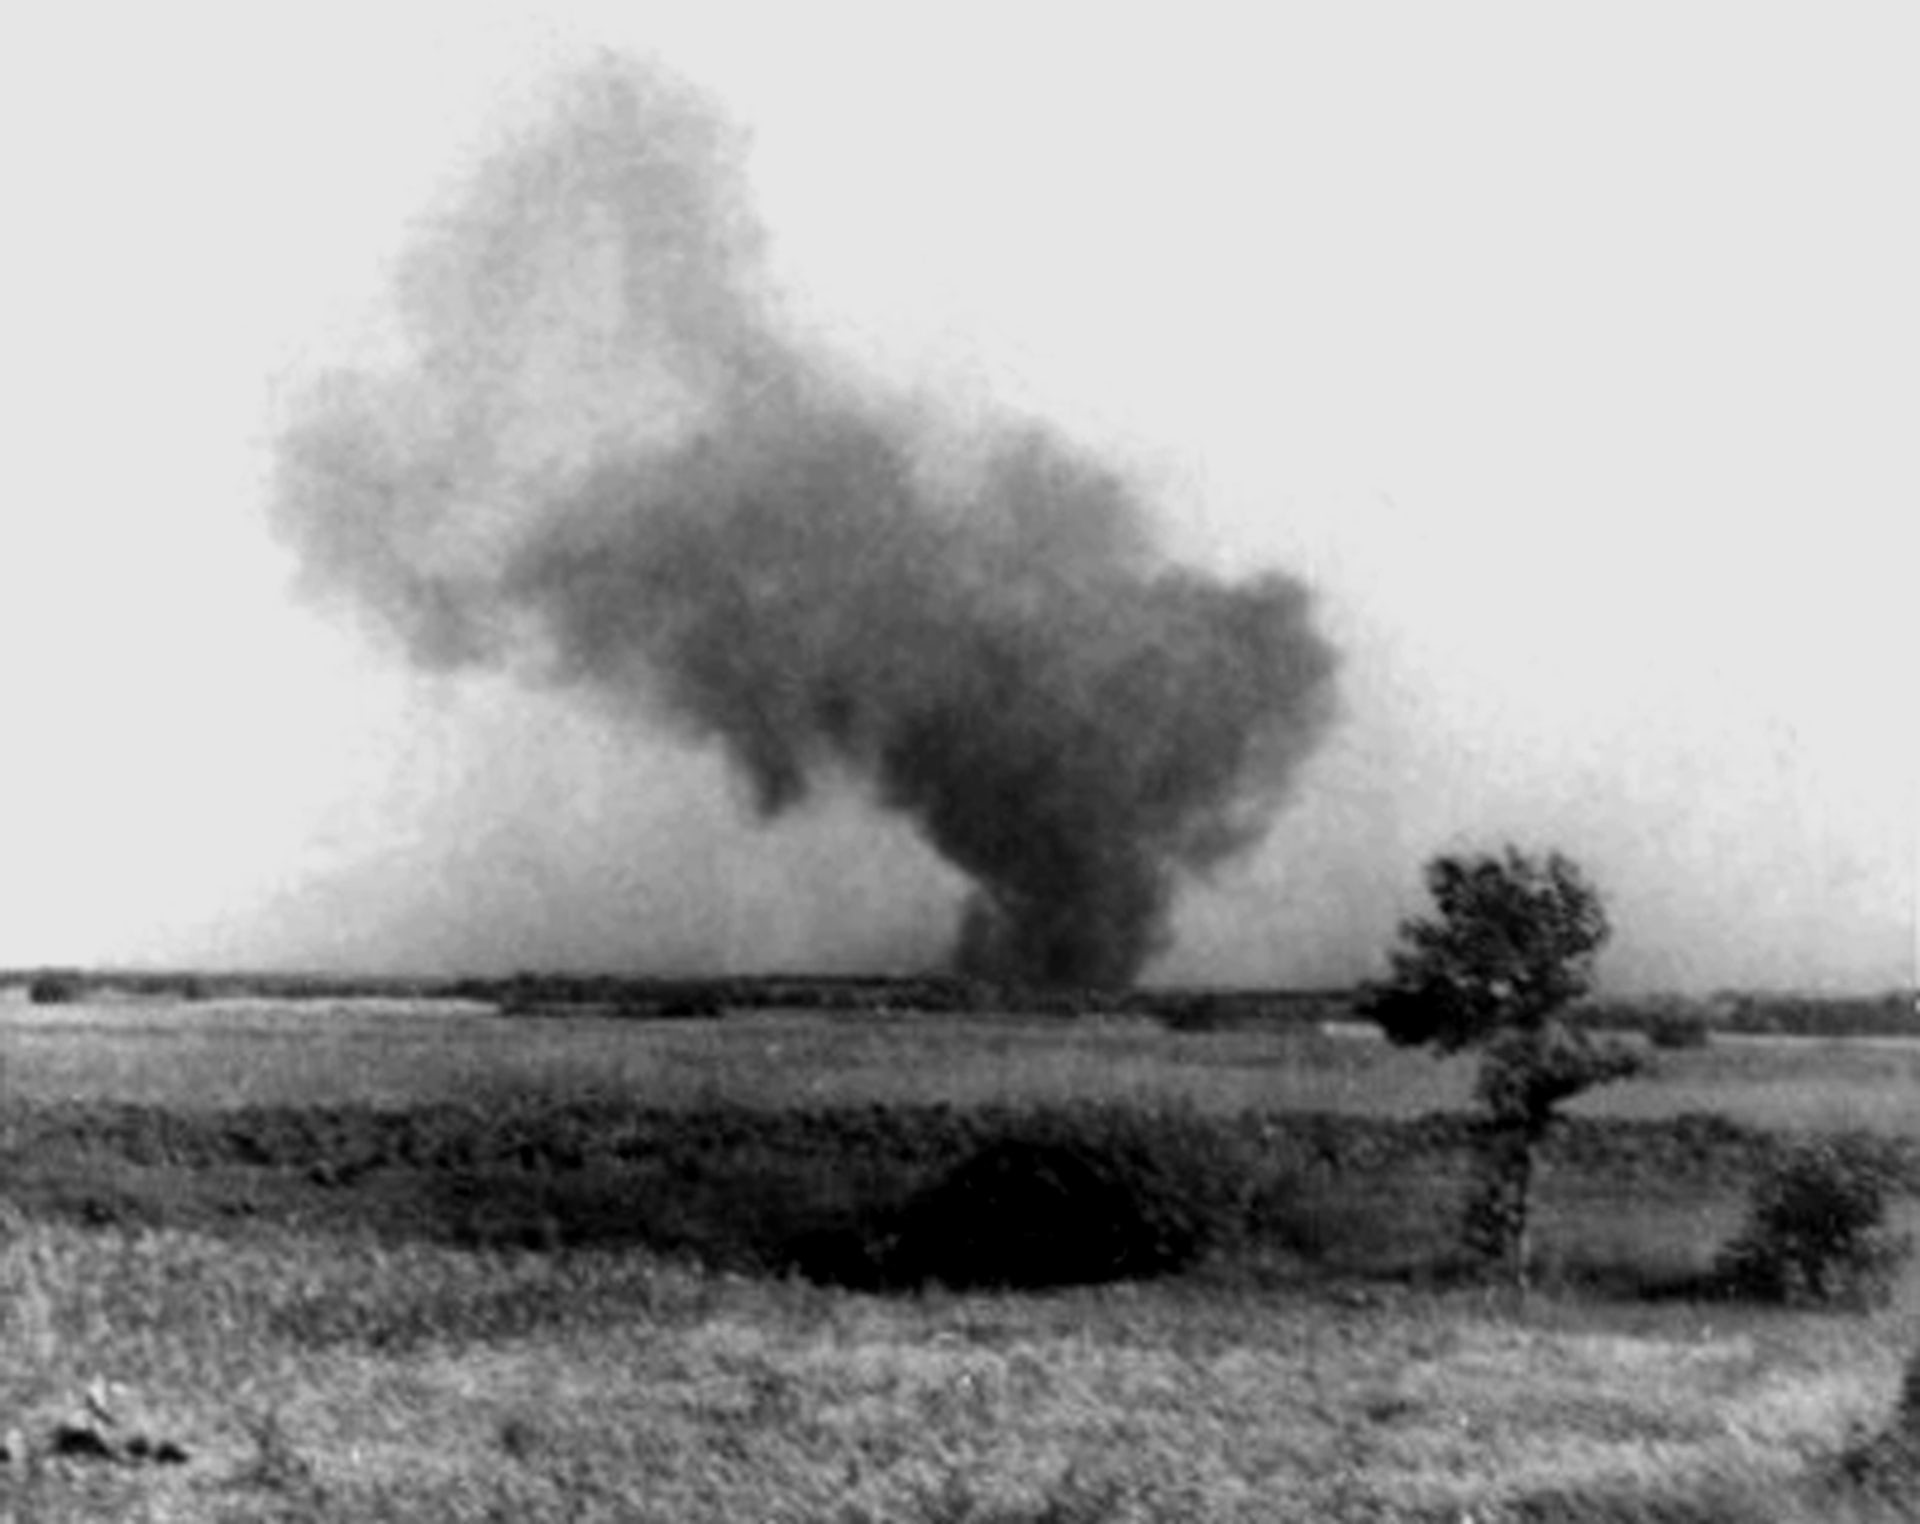 Una fotografía en blanco y negro muestra una enorme nube de humo que se eleva sobre un campo.